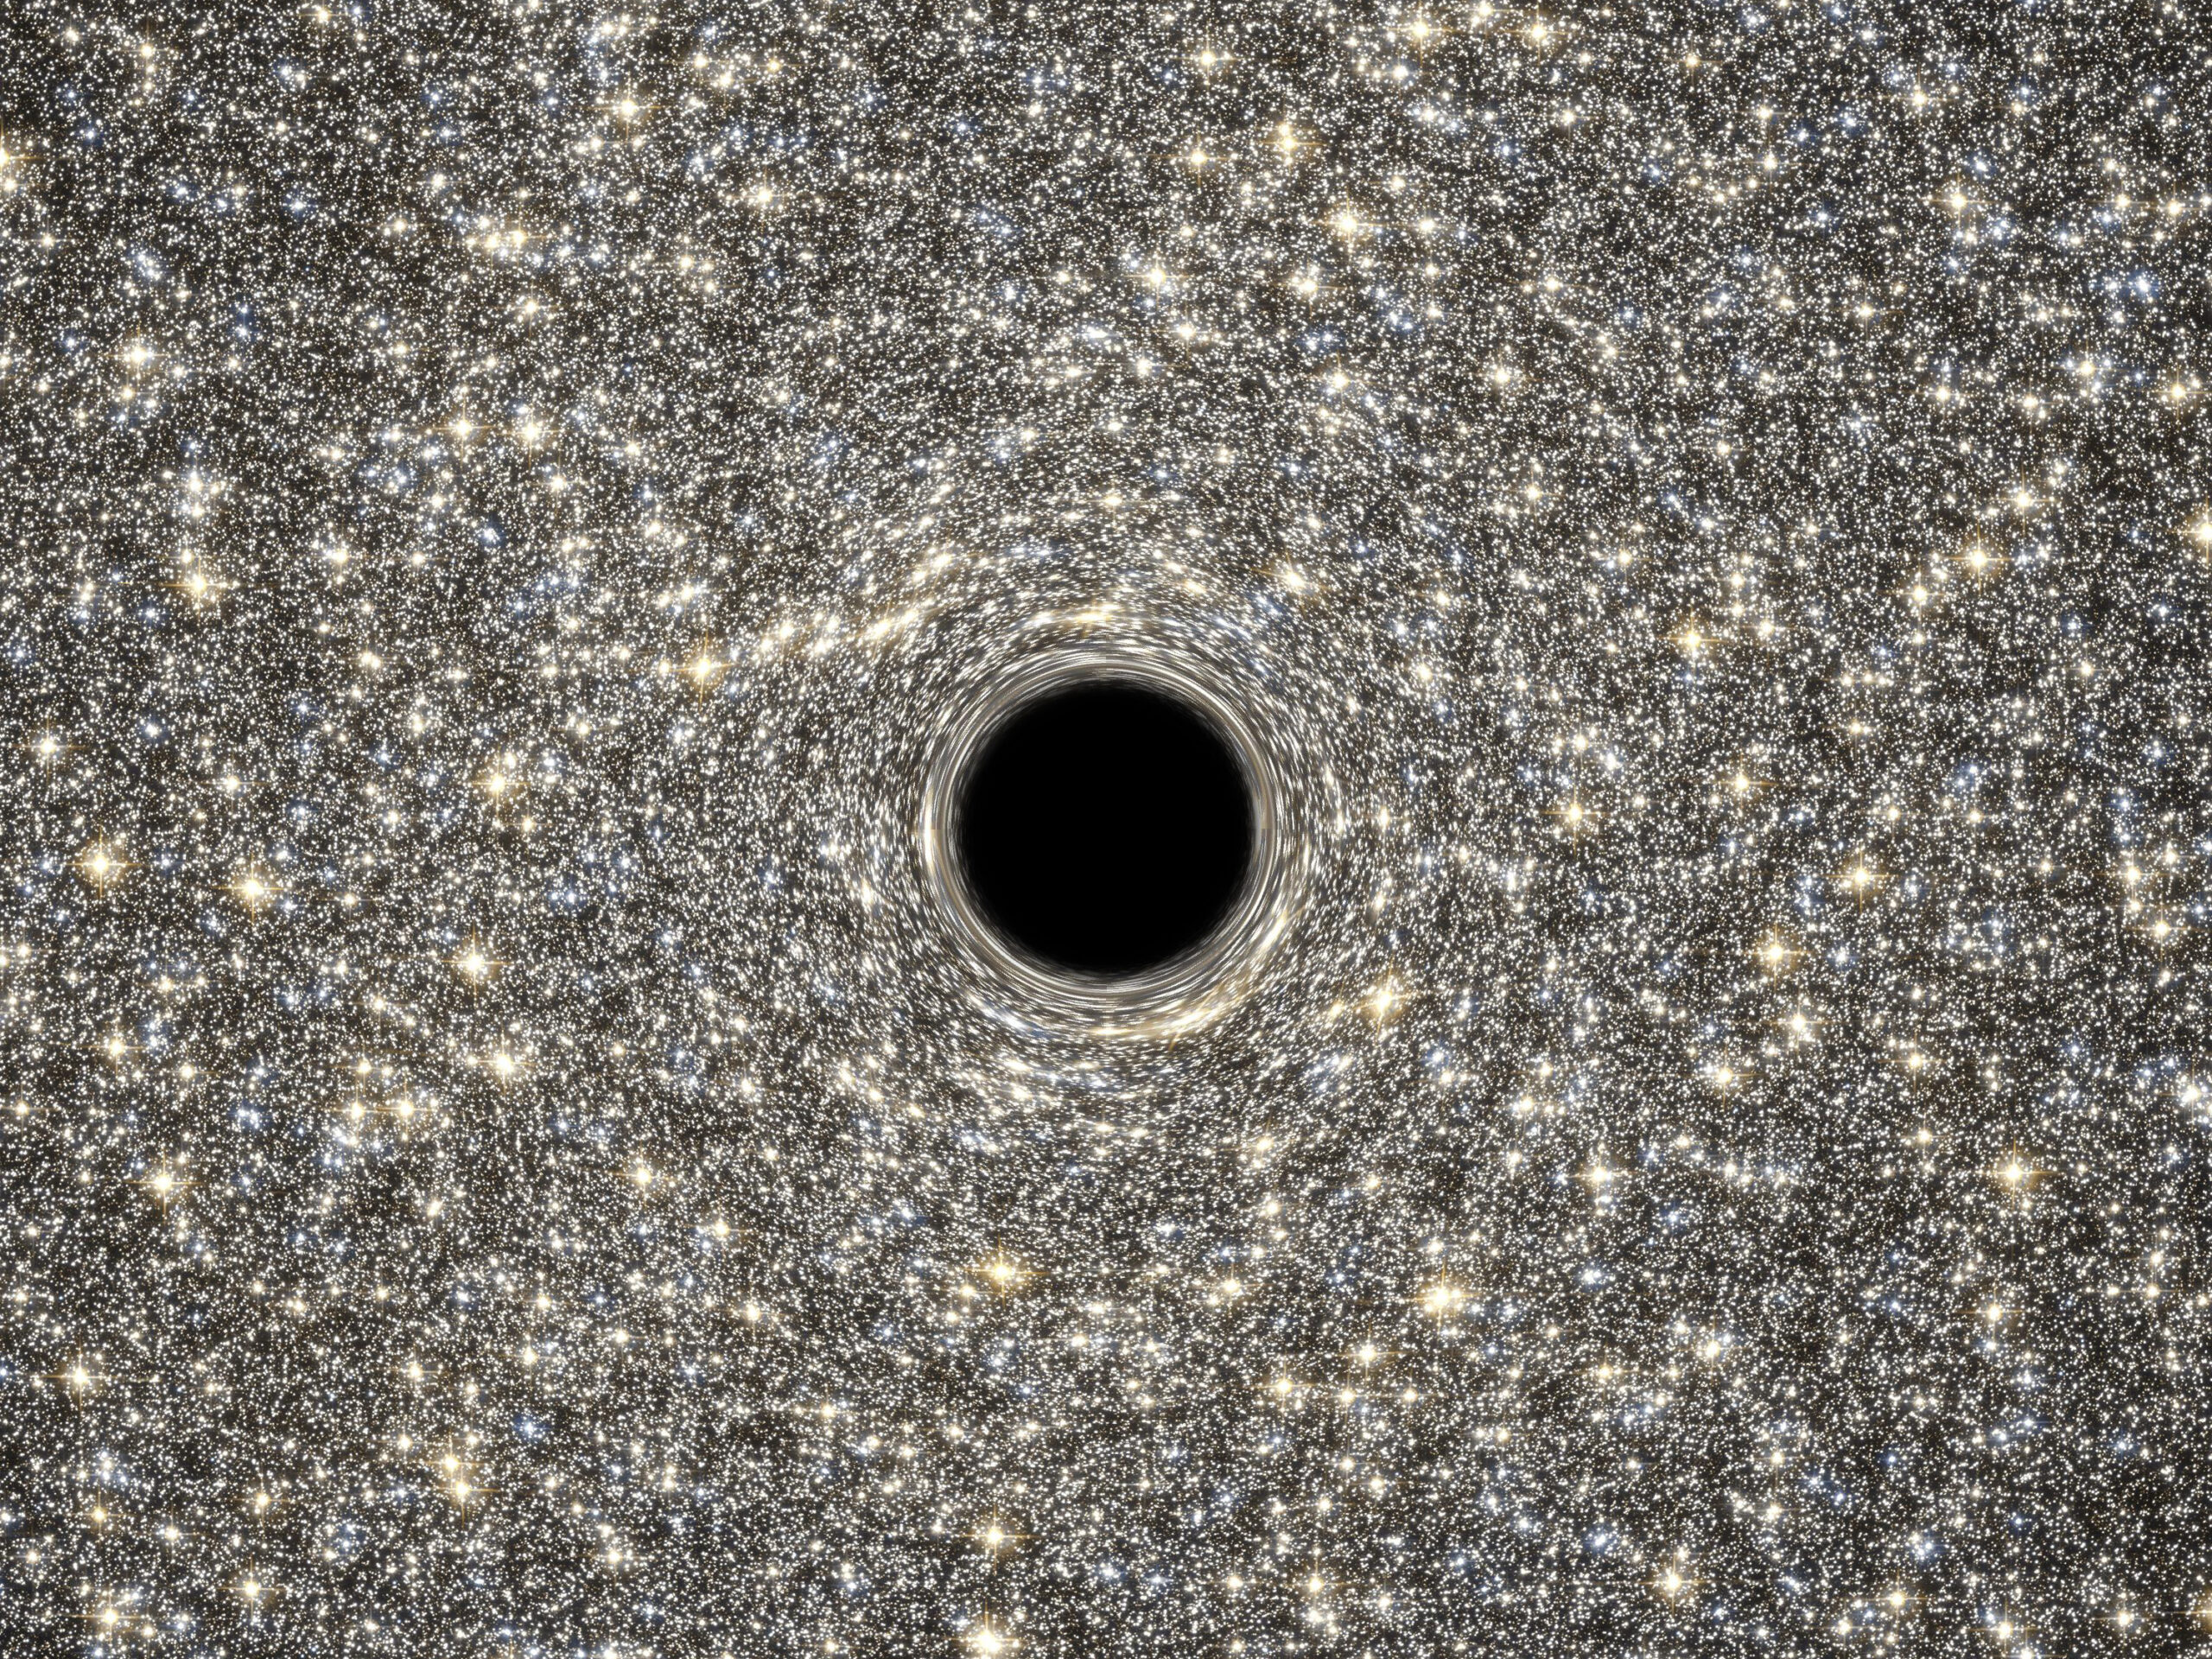 Descubierto un agujero negro inactivo fuera de nuestra galaxia